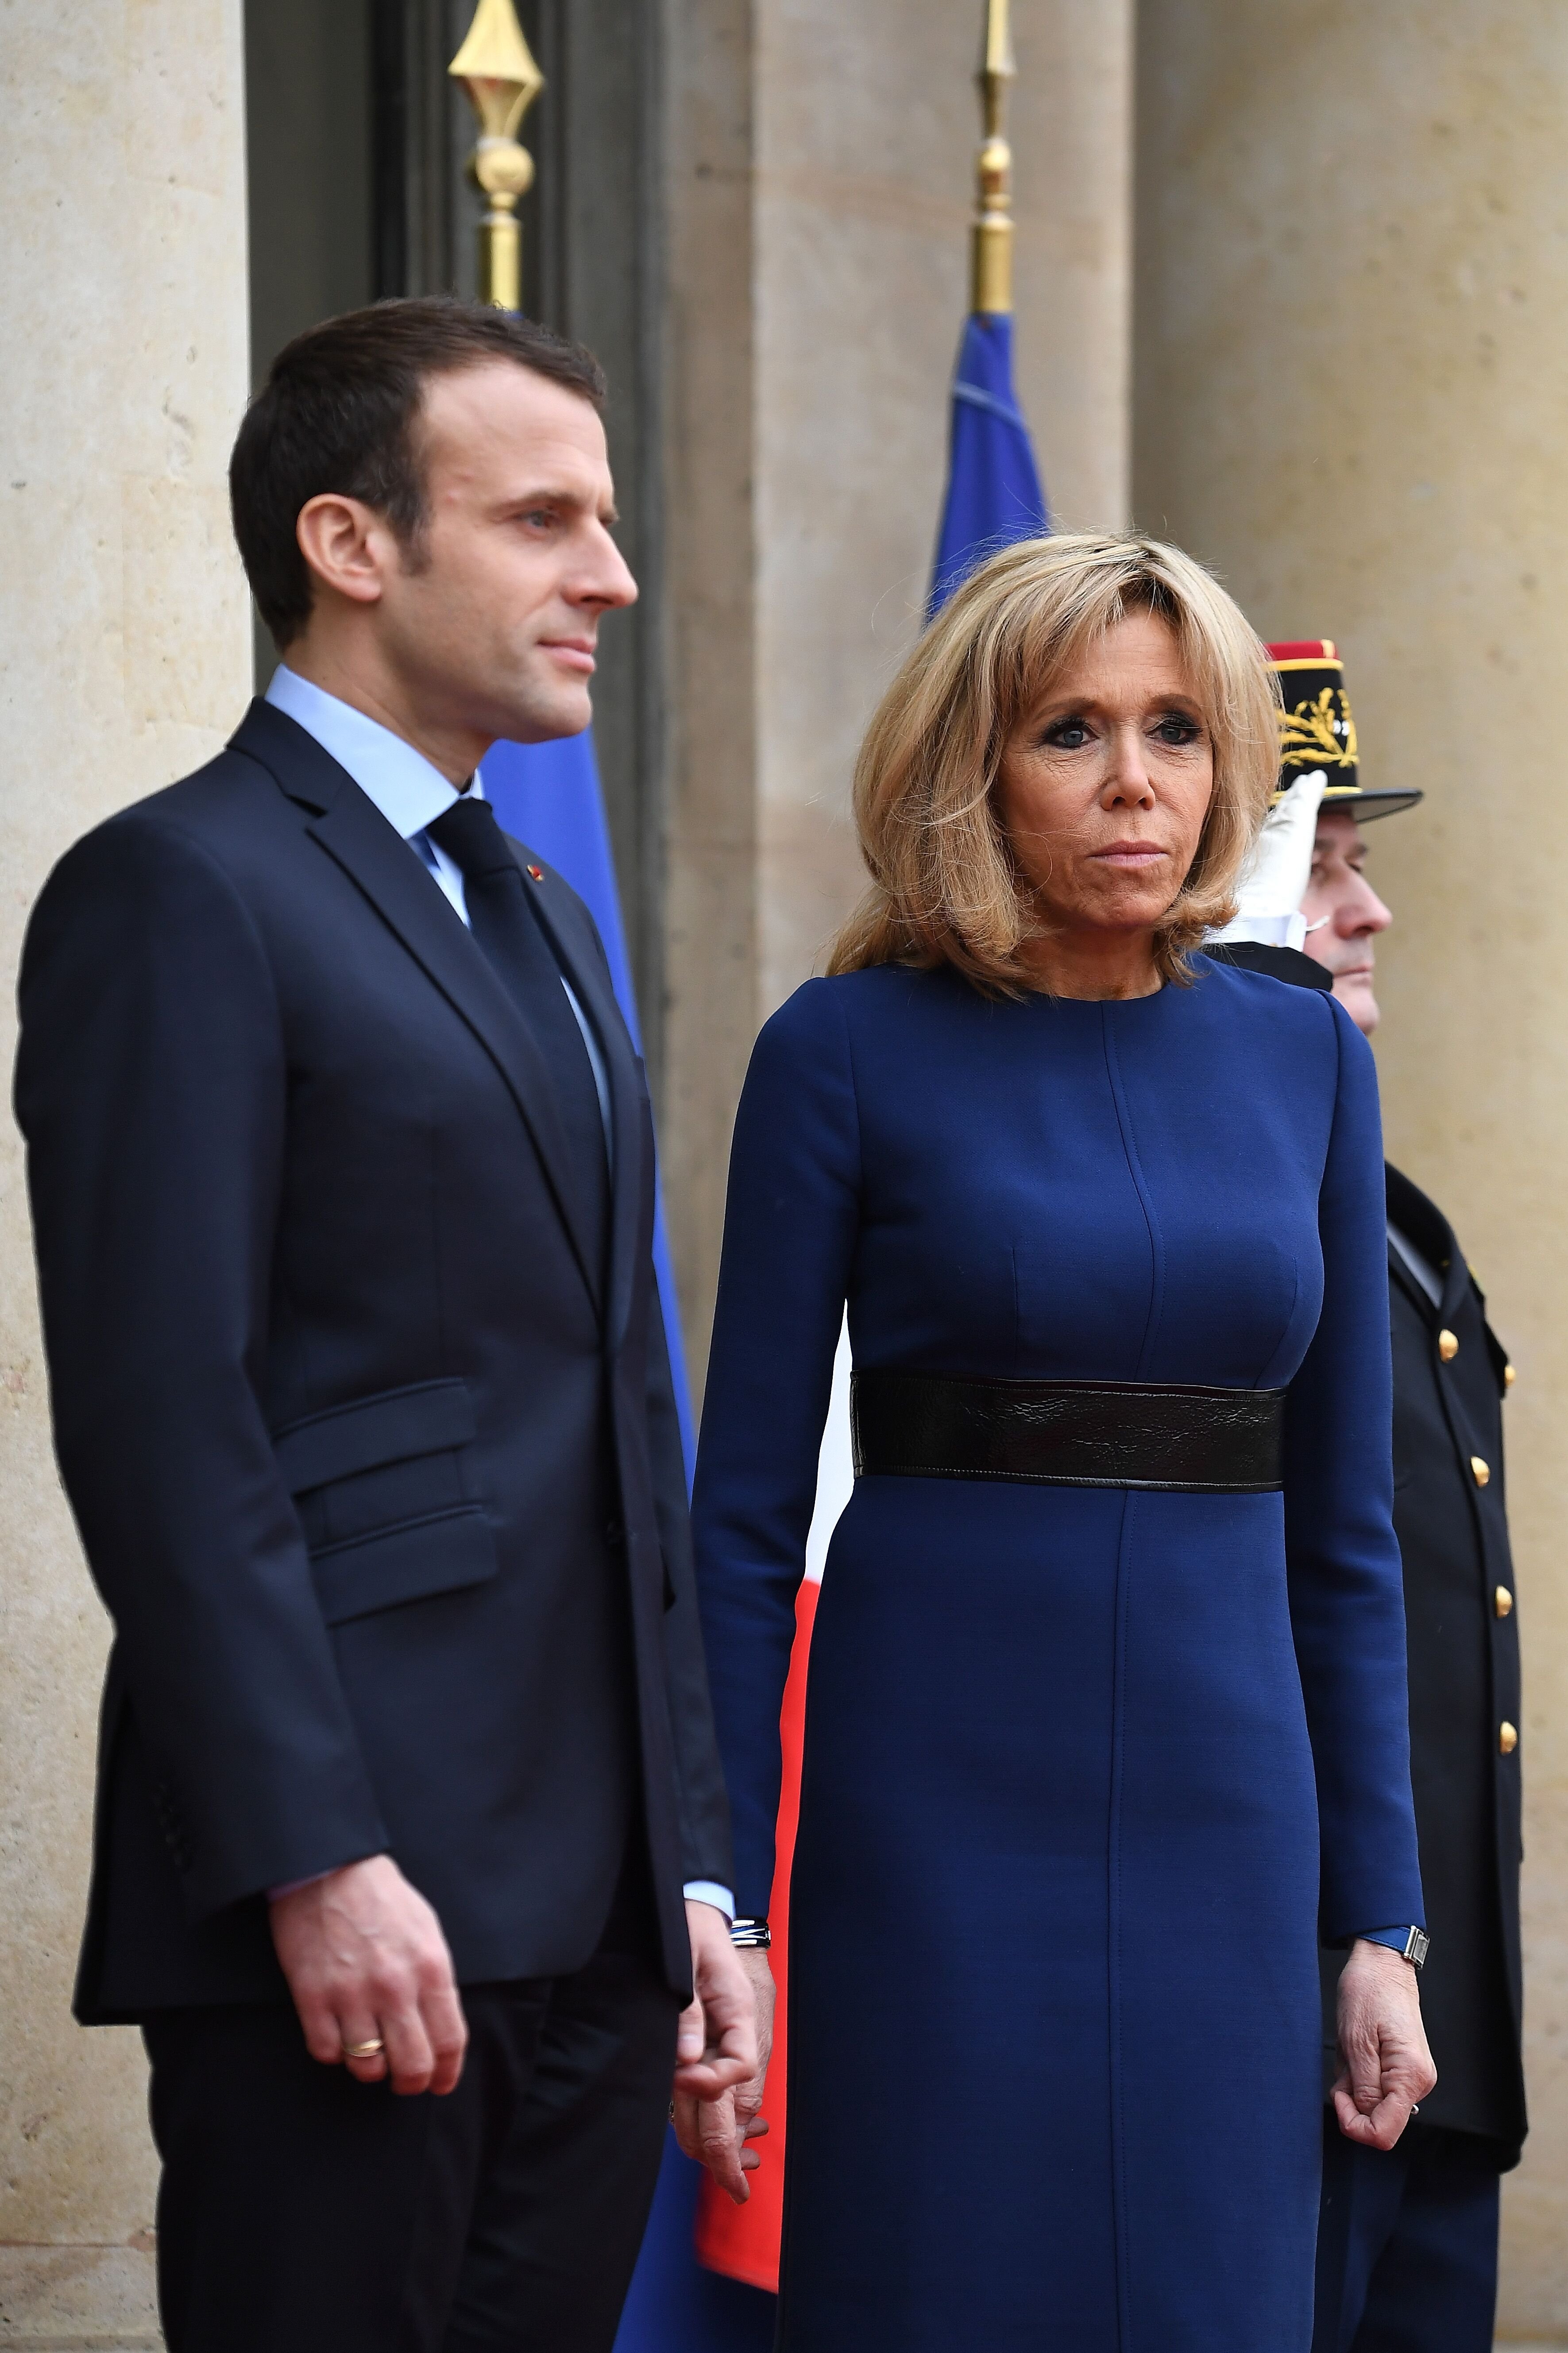  Le président français Emmanuel Macron et Brigitte Macron posent dans la cour du Palais de l'Elysée. | Photo : GettyImage